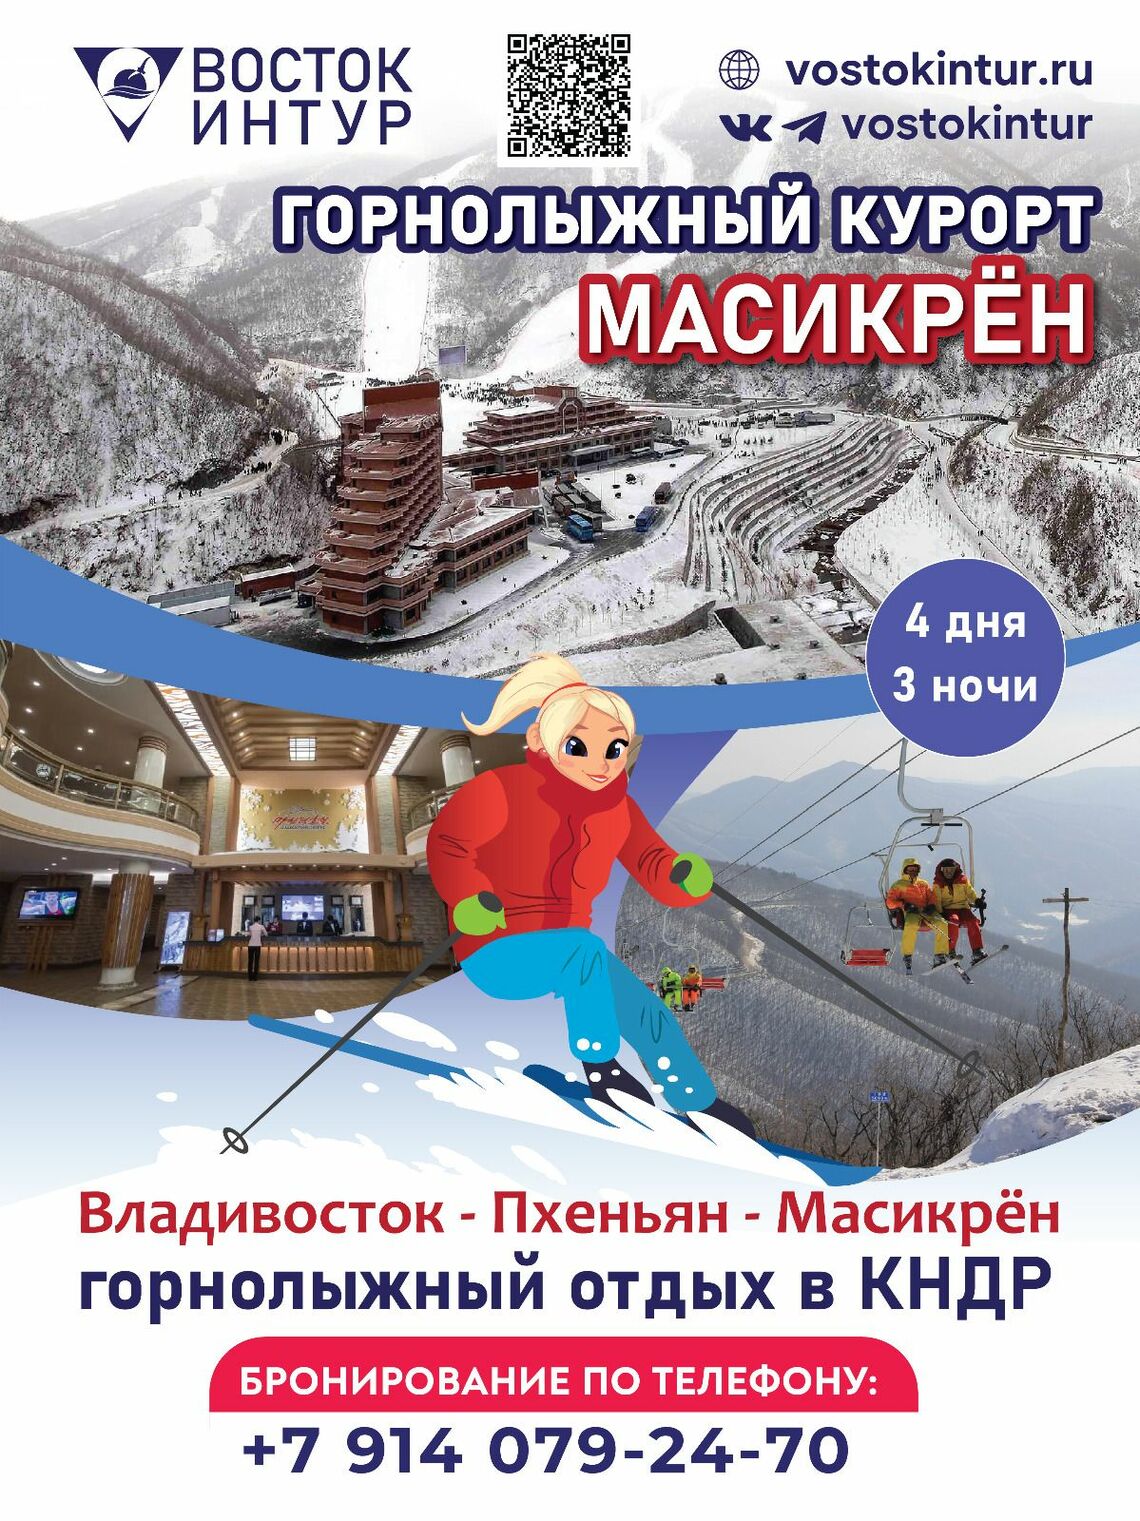 ロシア・ウラジオストクの旅行社ボストーク・イントゥール社による北朝鮮スキーツアーのポスター。「山岳スキーリゾート馬息嶺」と名づけ、3泊4日のツアーとなっている（写真・同社のホームページより）